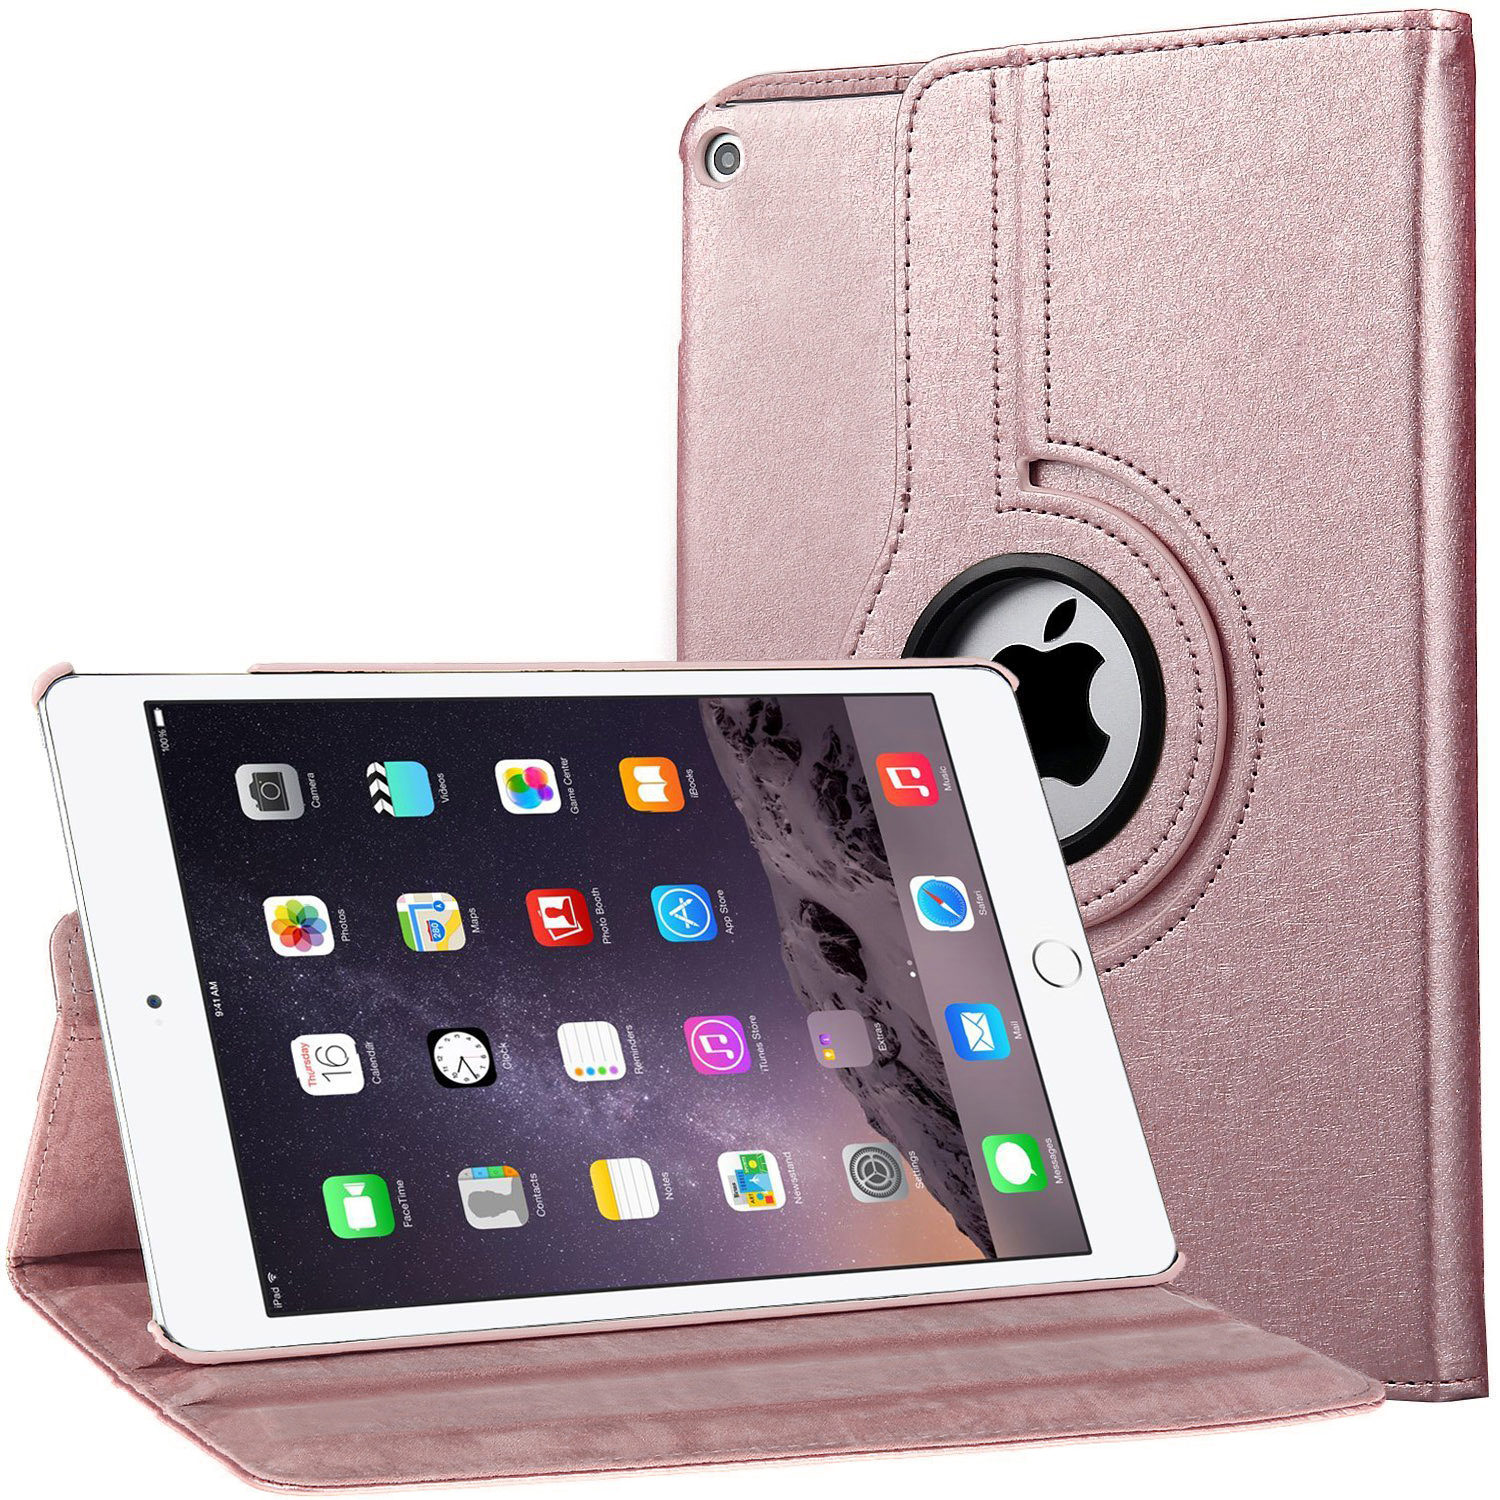 ebestStar ® pour iPad Air, iPad Air Wi-Fi - Housse Coque Etui PU cuir  Support rotatif 360°, Bleu Foncé EBESTSTAR Pas Cher 